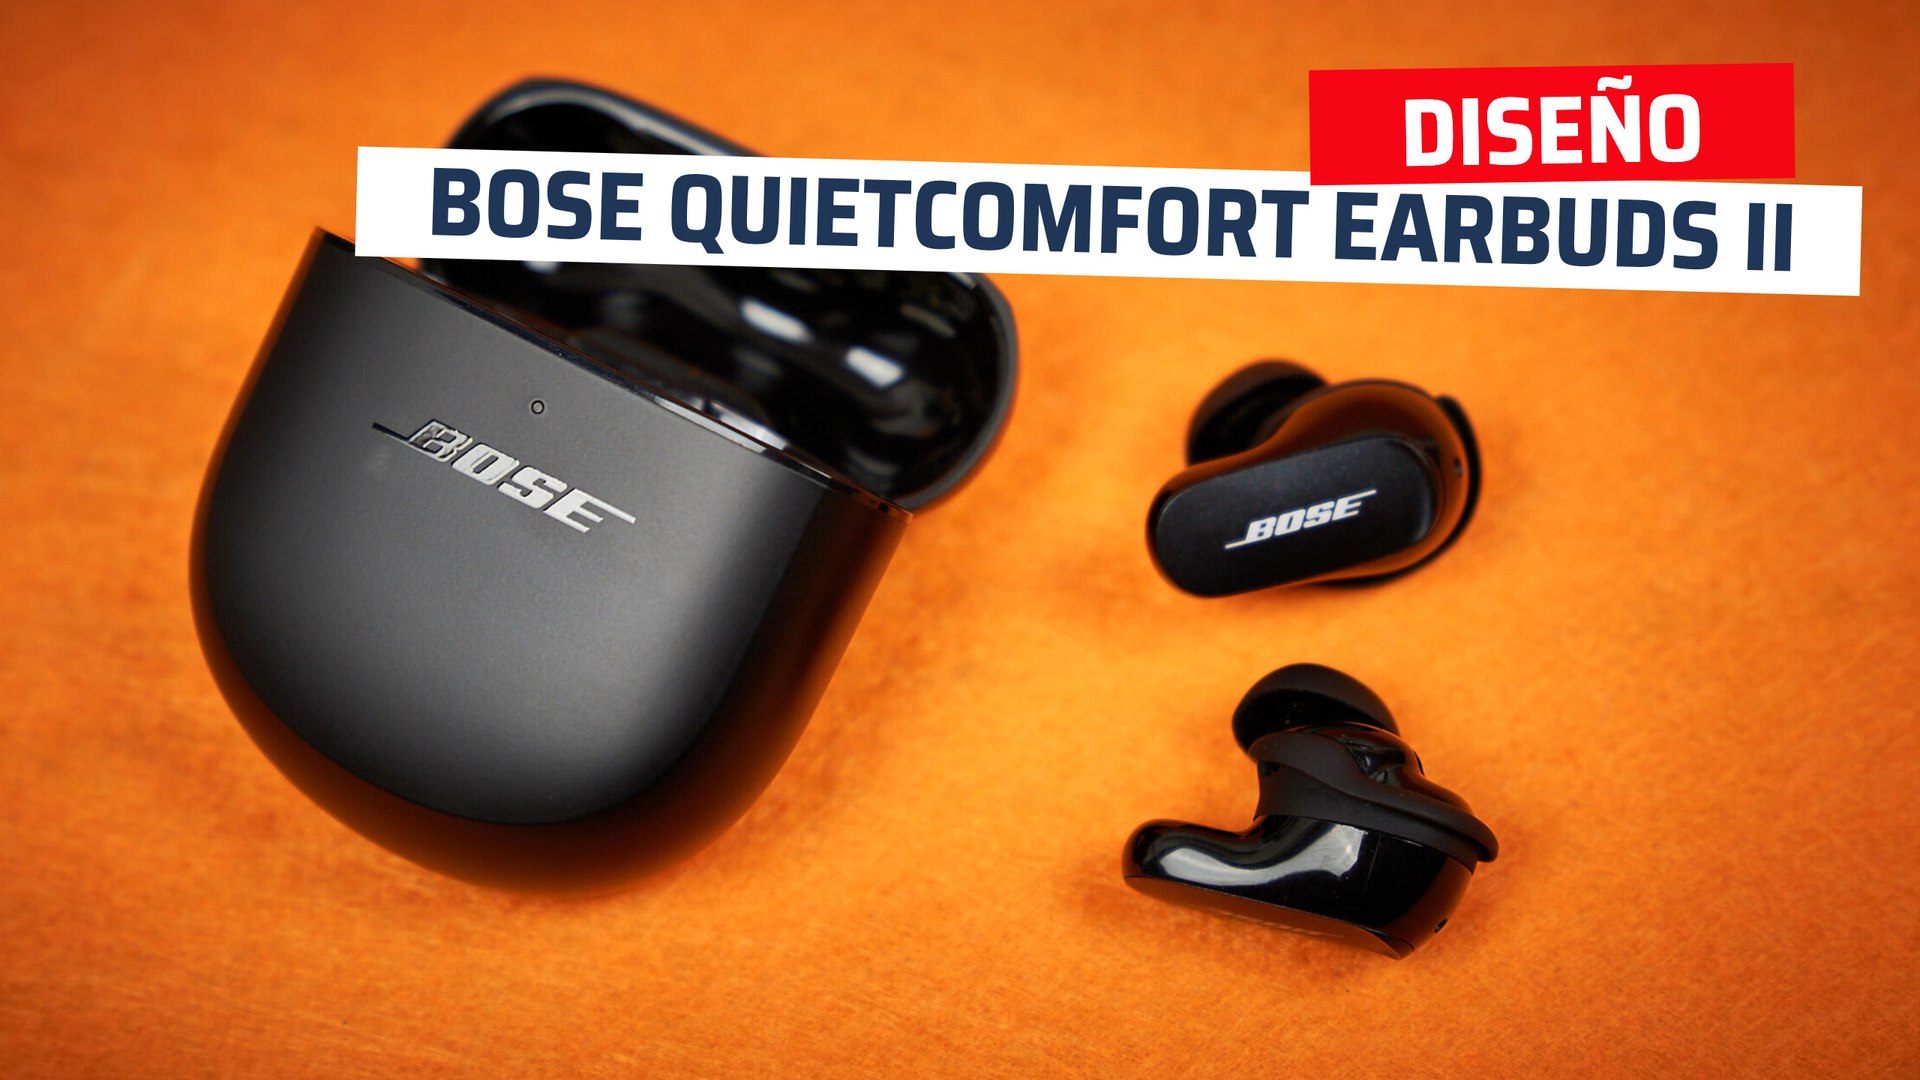 Probamos los nuevos Bose SleepBuds: unos auriculares para dormir a